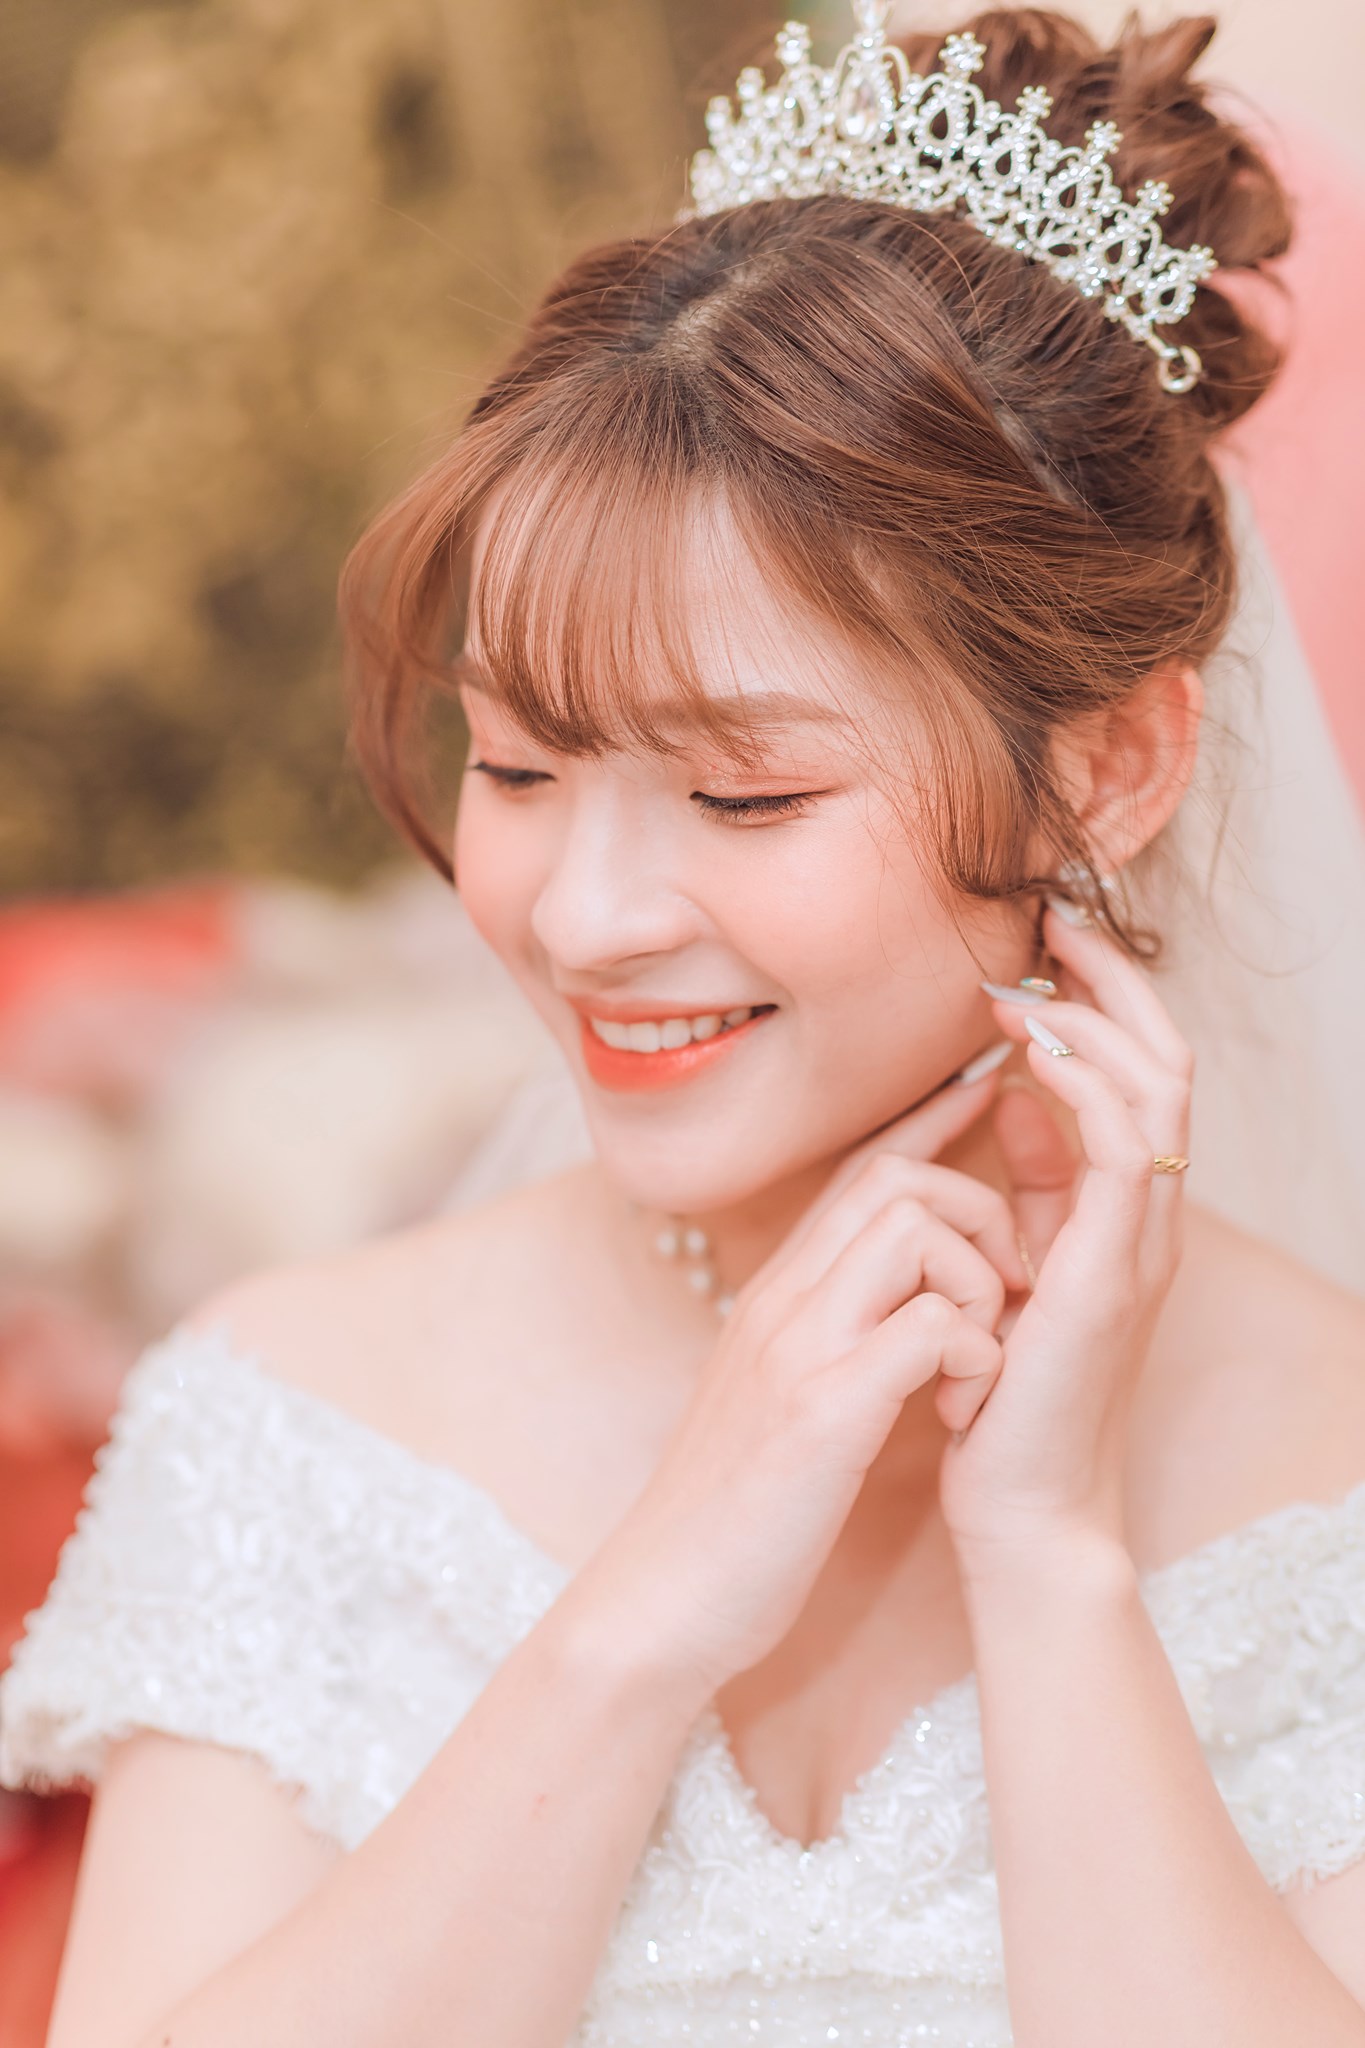 Hình ảnh một cô dâu độc thân đang mỉm cười hạnh phúc